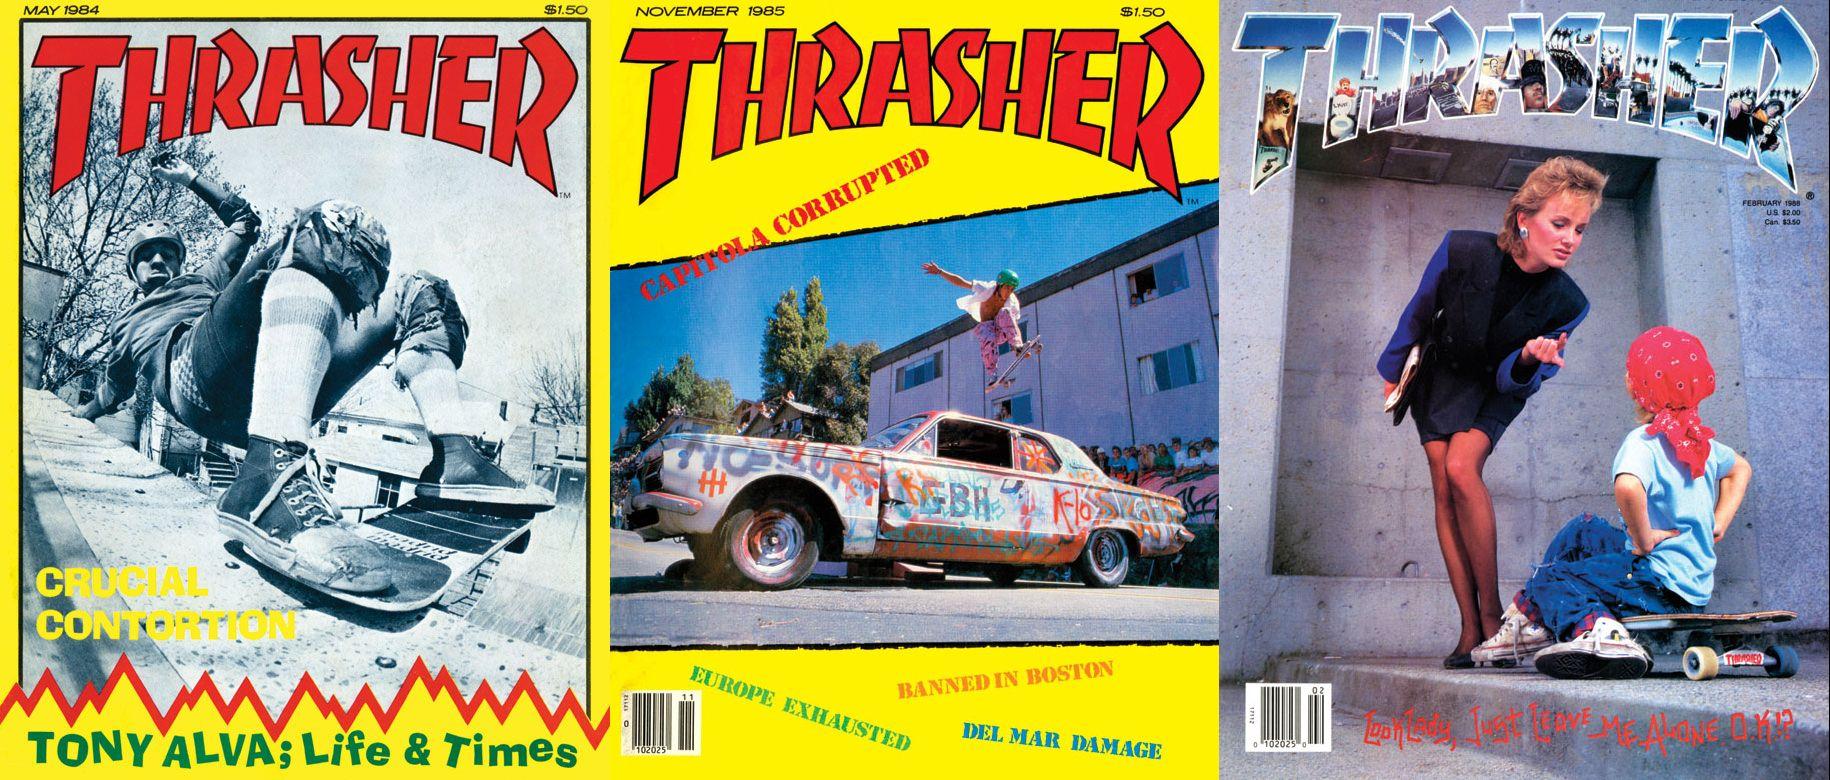 Old Thrasher Logo - Skate or Die! Thrasher Magazine Archives Now Online | CLPTeensburgh ...